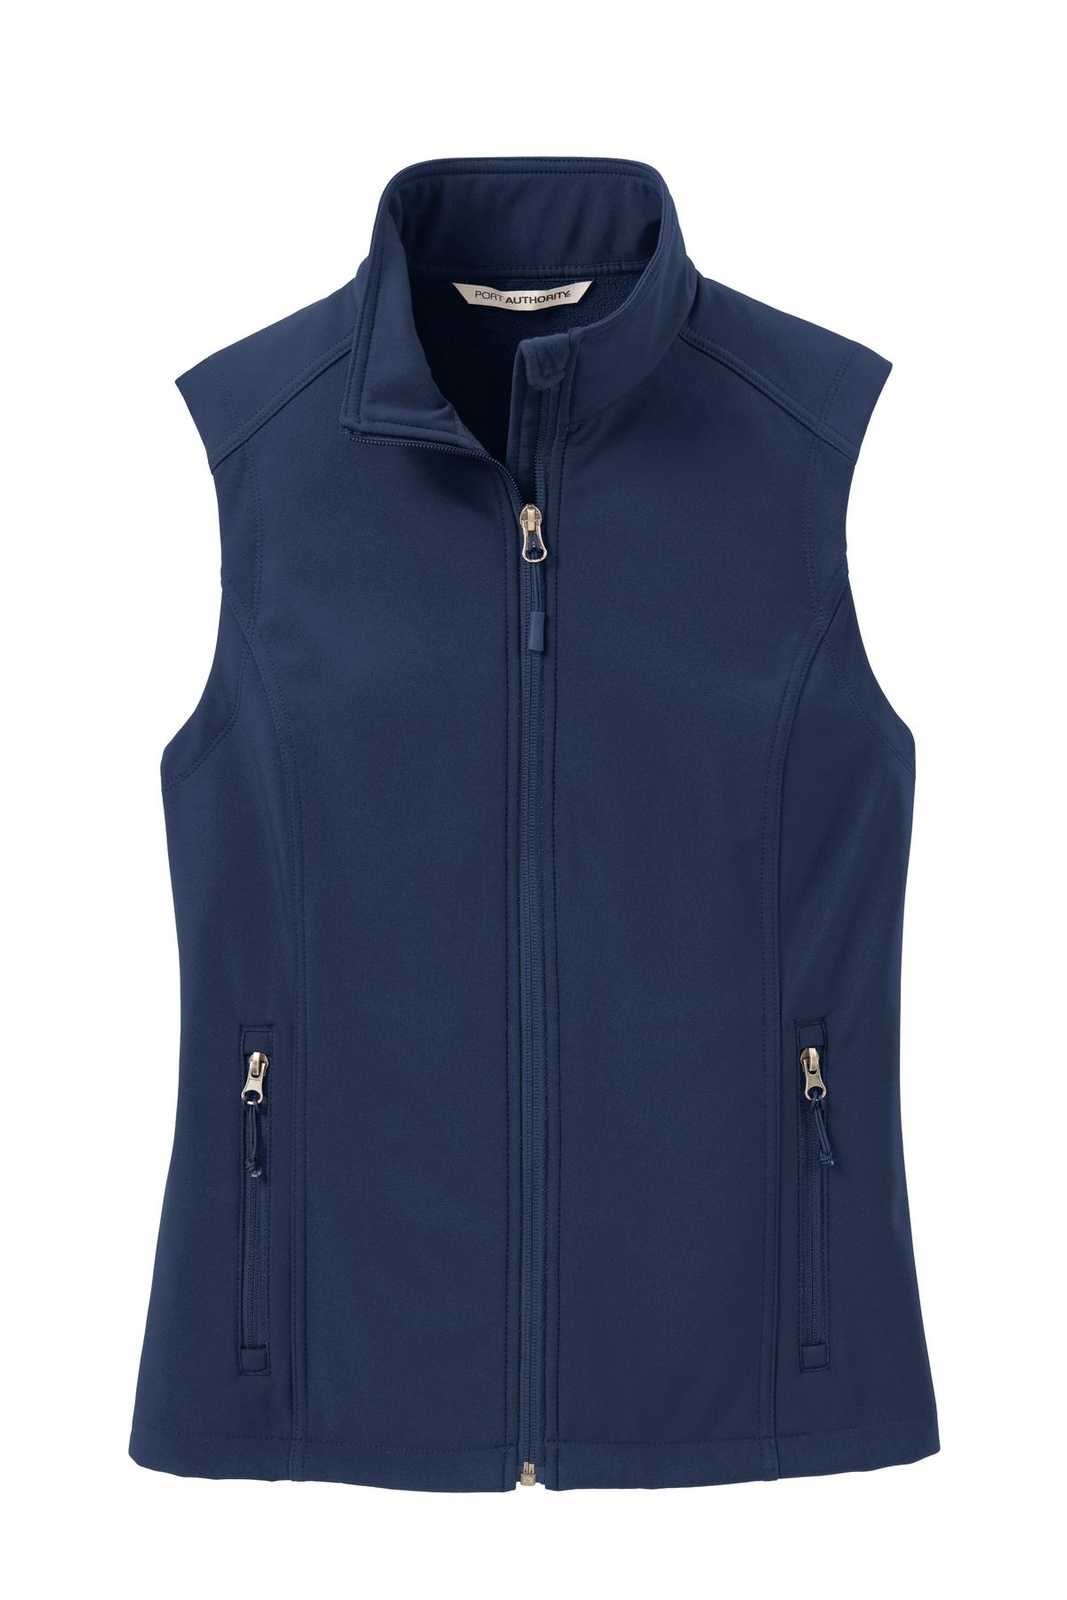 Port Authority L325 Ladies Core Soft Shell Vest - Dress Blue Navy - HIT a Double - 5